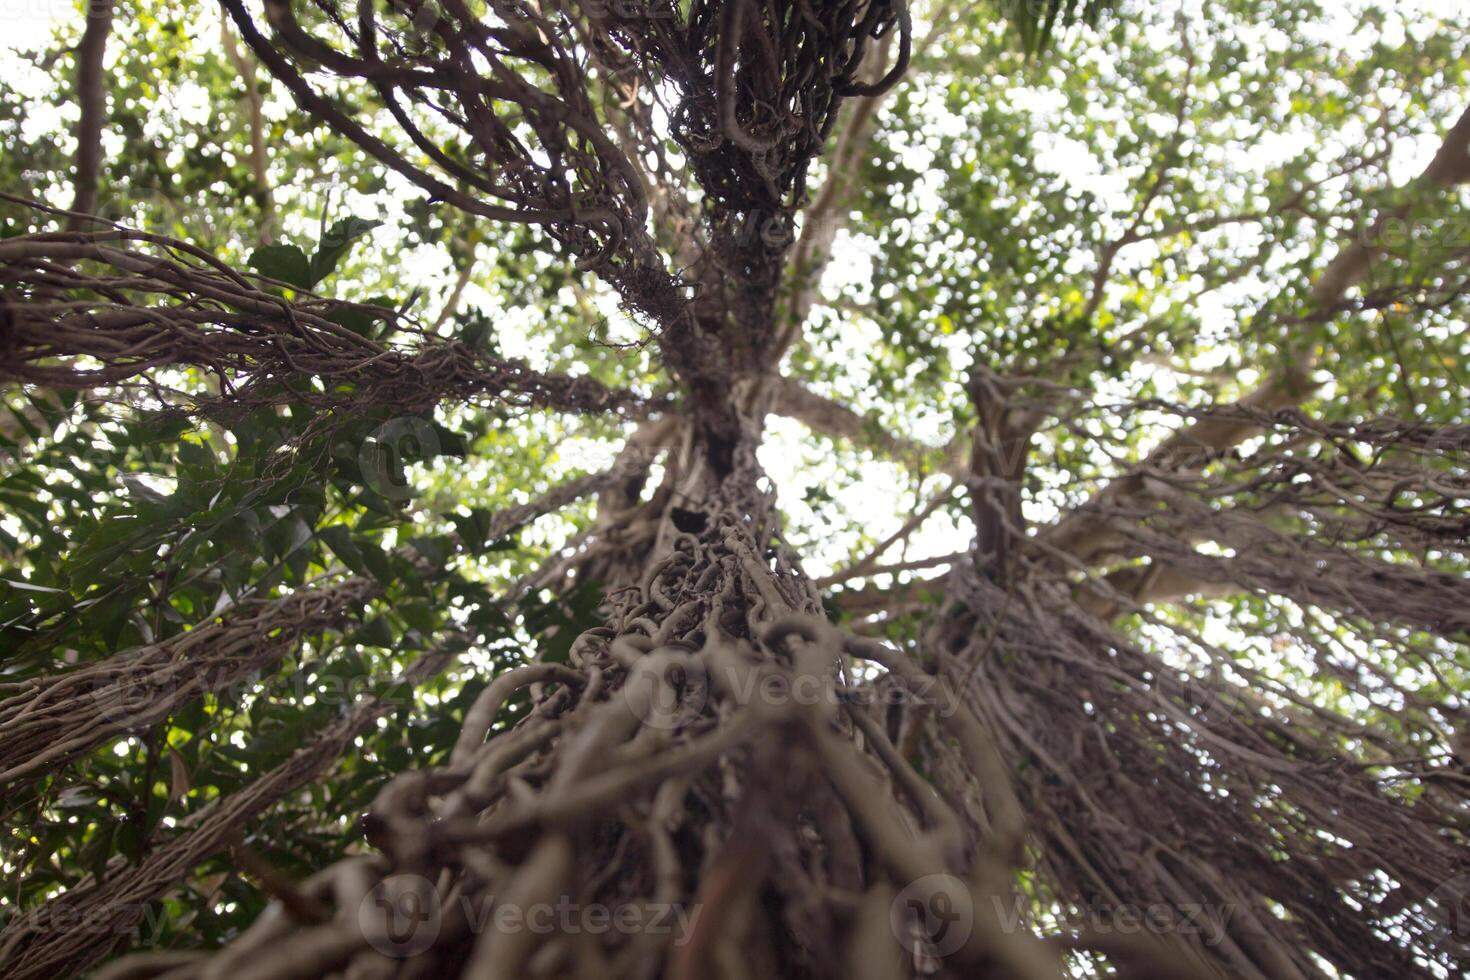 banian arbre de la vie dans allez. photo